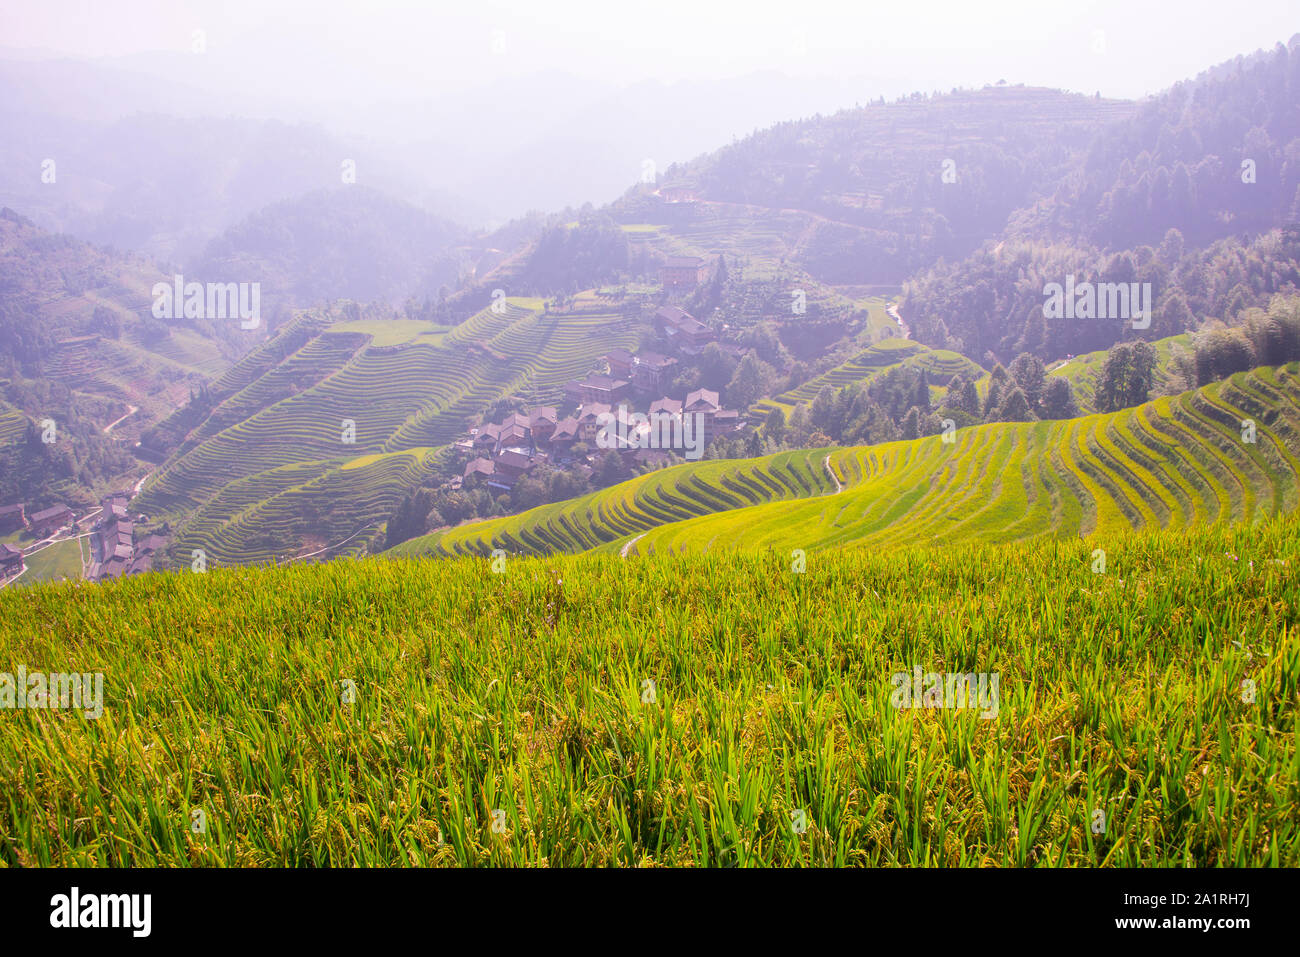 Vista panoramica di Longsheng terrazze di riso e il ping di un villaggio nel cadere nella regione autonoma di Guangxi Zhuang della Cina vicino Gullin. Foto Stock